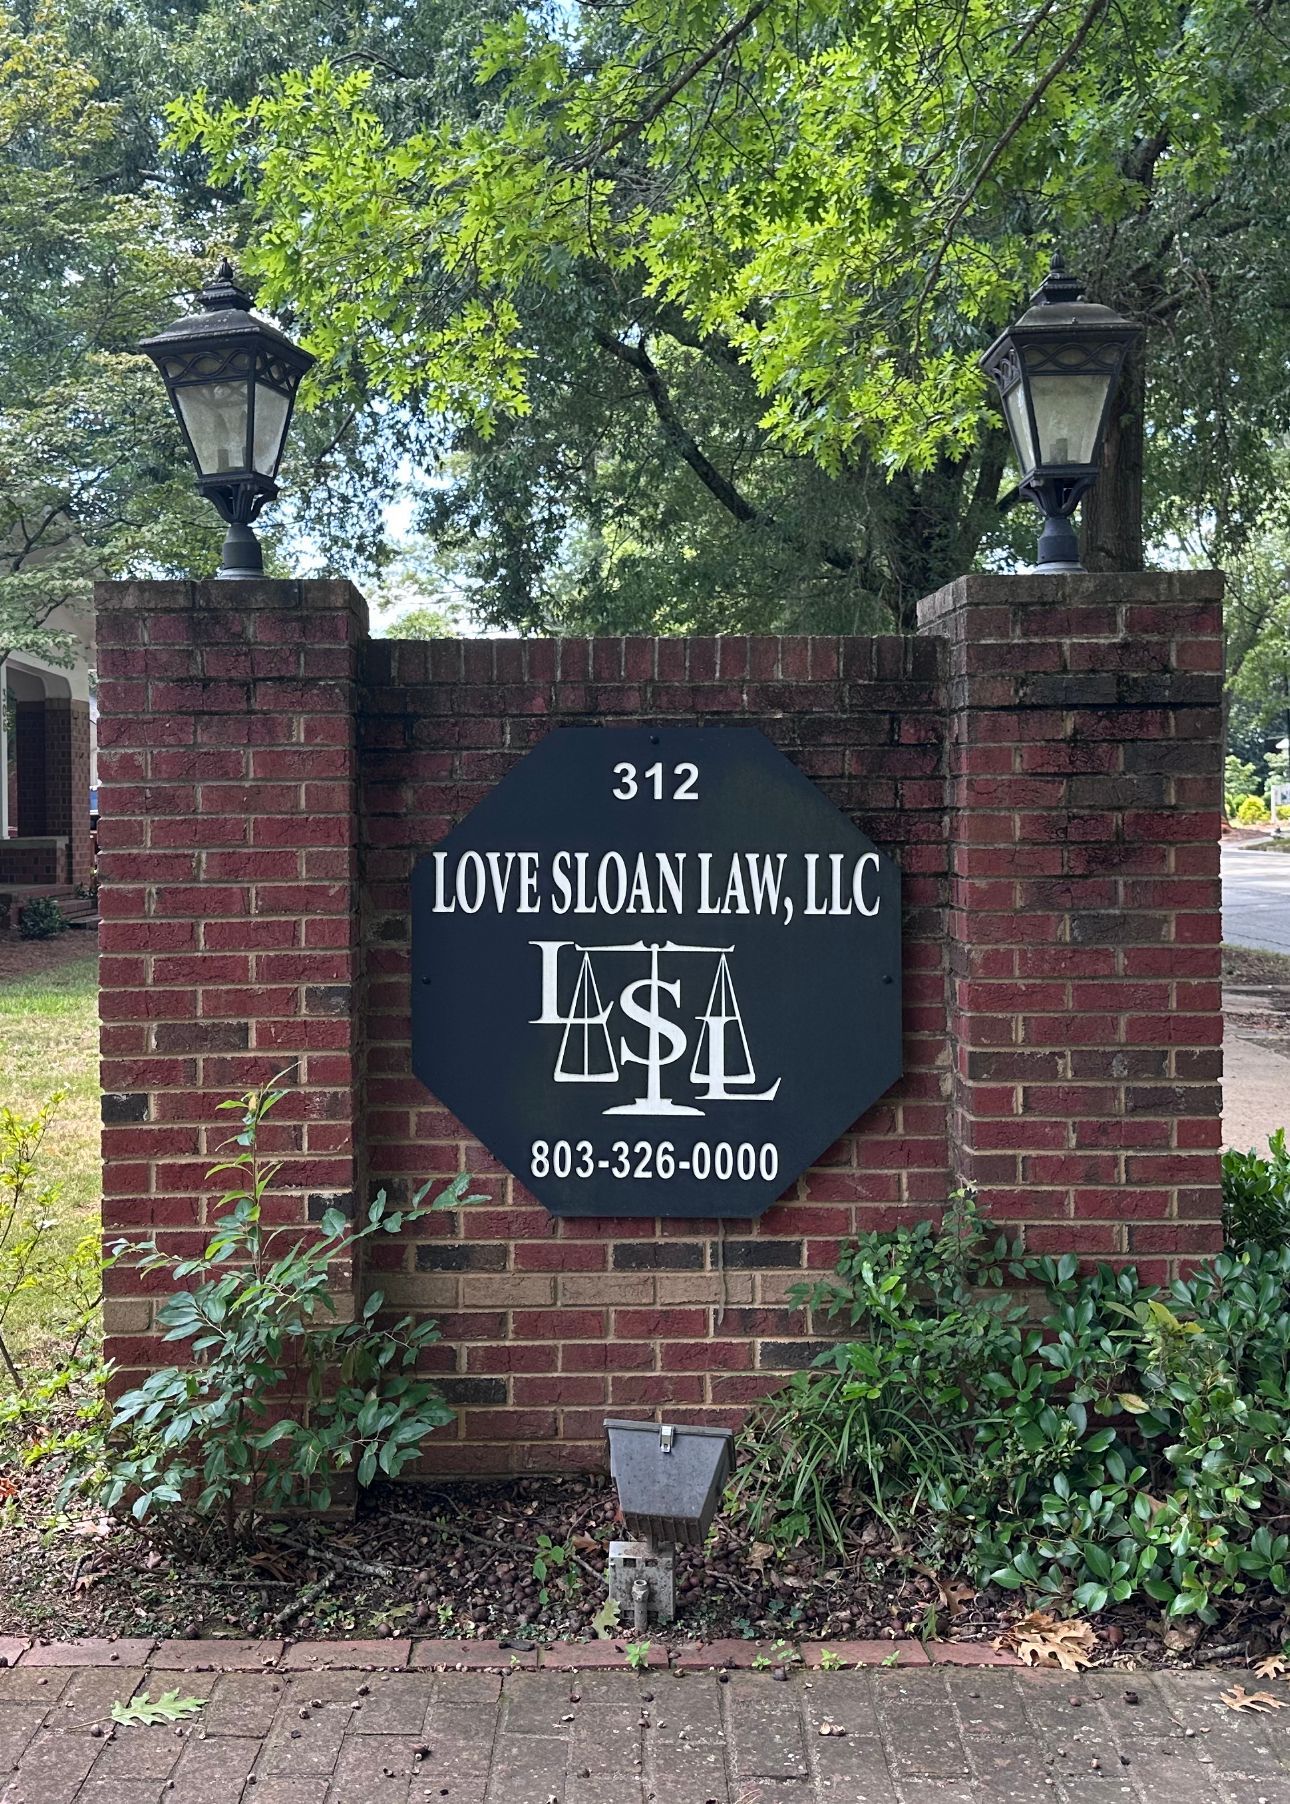 Love-Sloan Law Office Signage — Rock Hill, S.C. — Love-Sloan Law